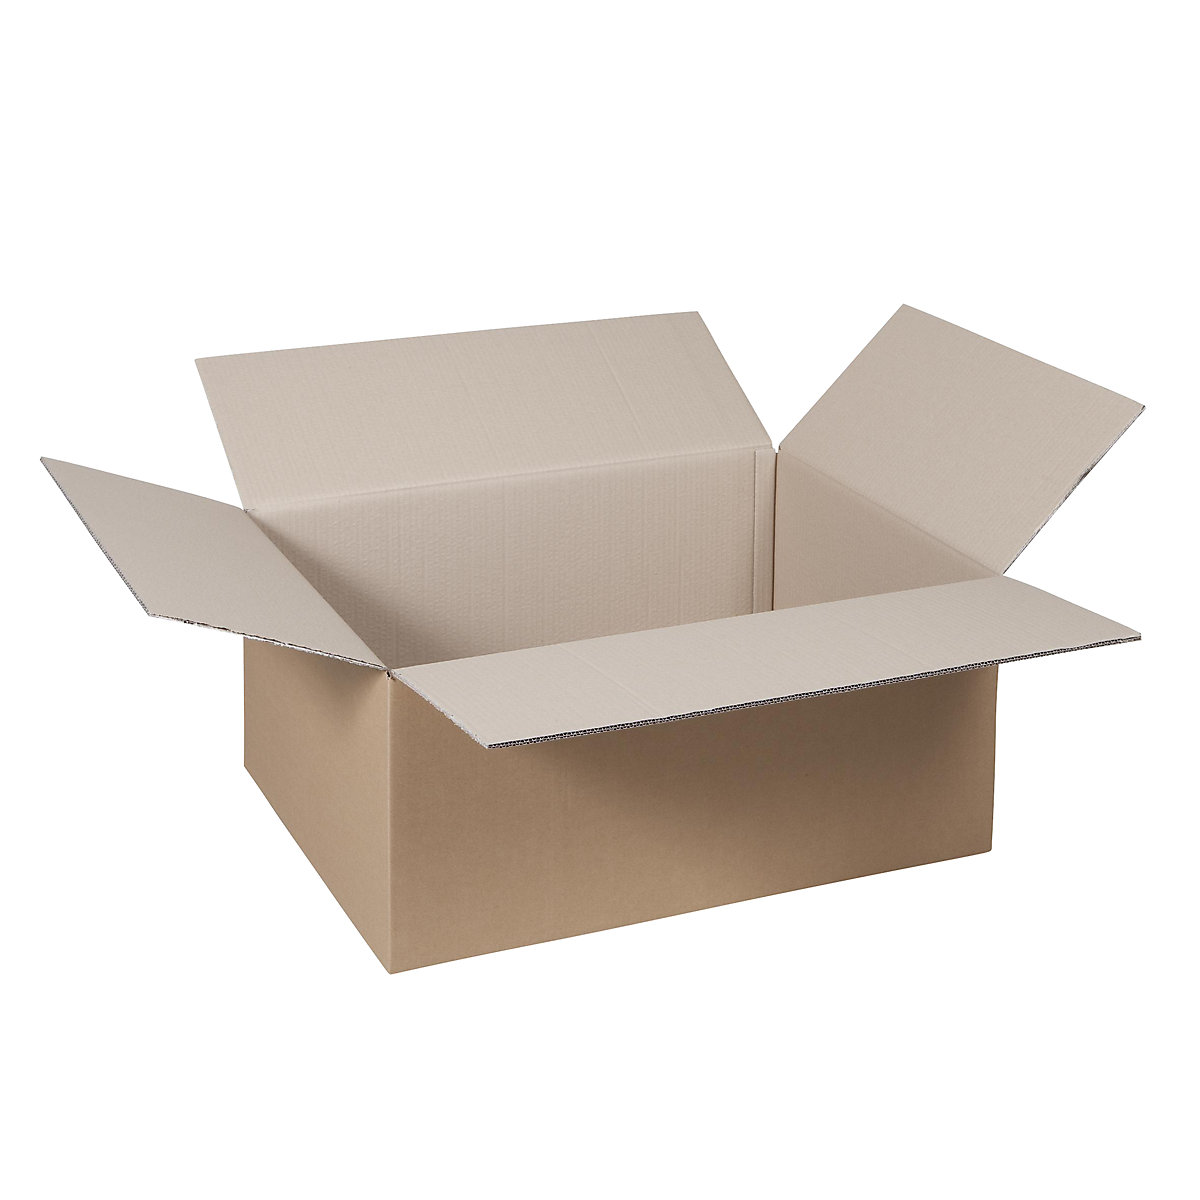 Cutie de carton pliantă, FEFCO 0201, cu 2 straturi de carton ondulat, dimensiuni interioare 700 x 500 x 300 mm, amb. 100 buc.-40